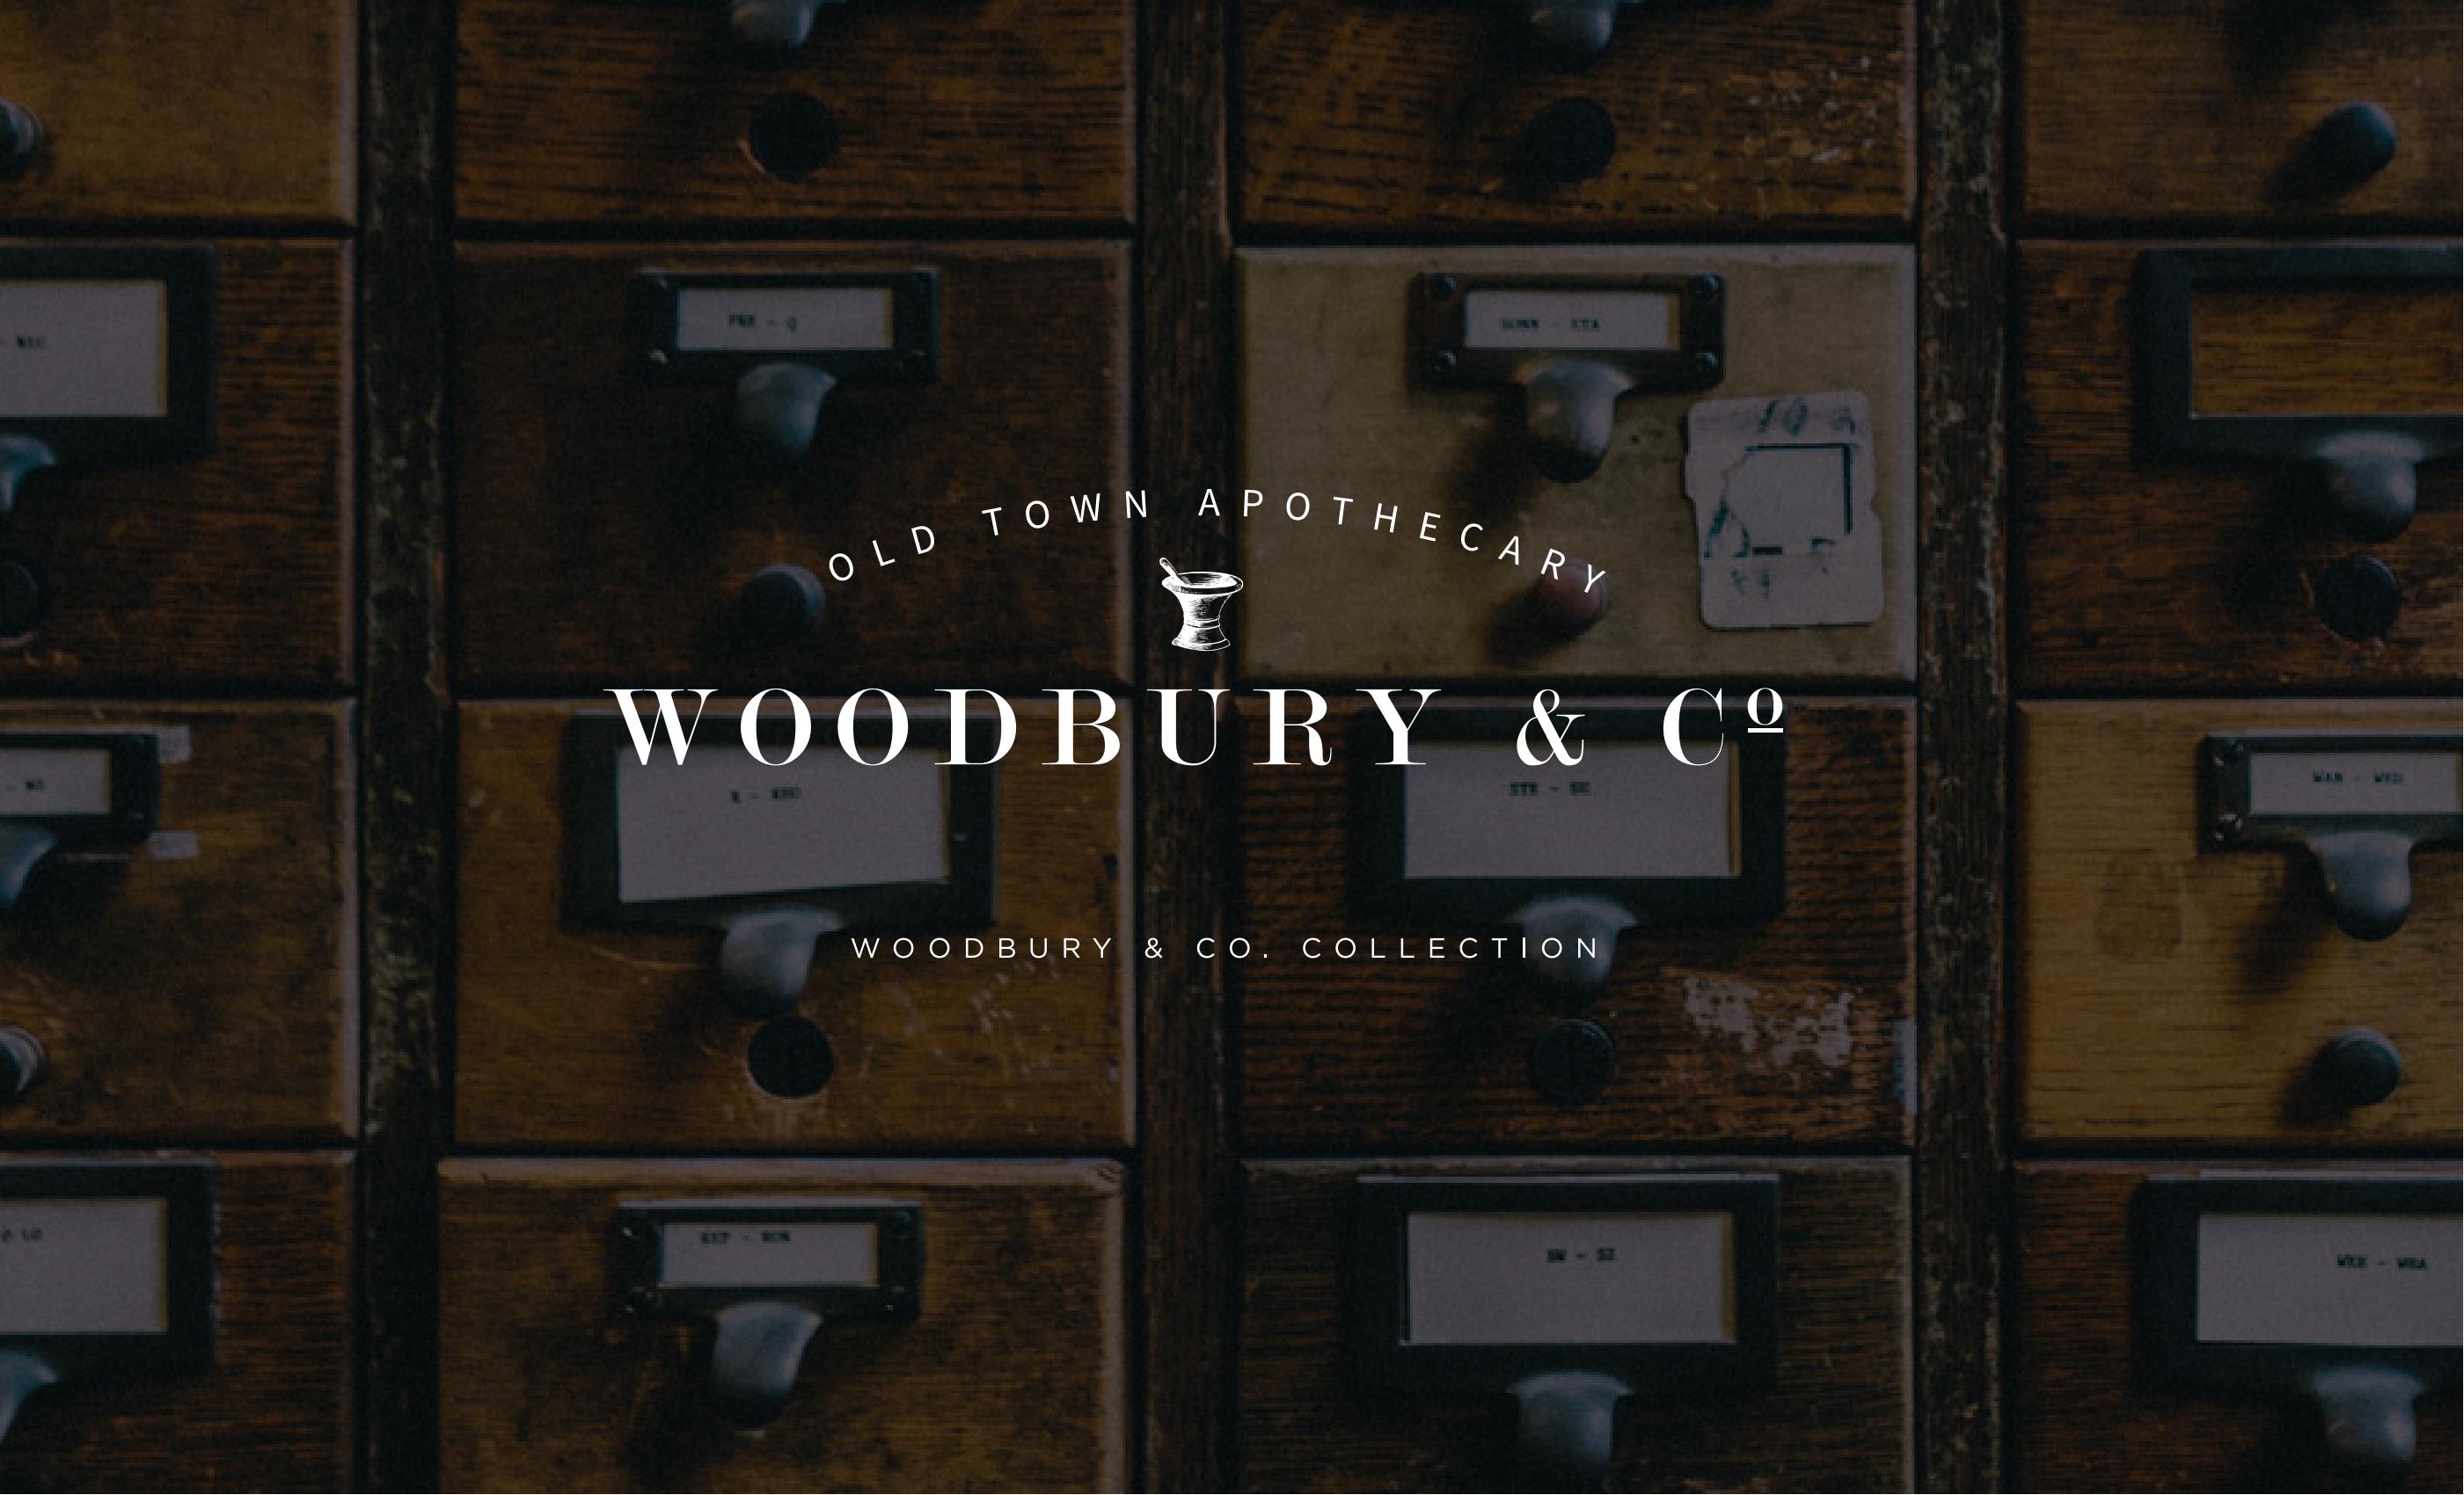 20230324-新版品牌图册 - Woodbury & Co (妩宝丽)品牌介绍+产品(1)_00.jpg